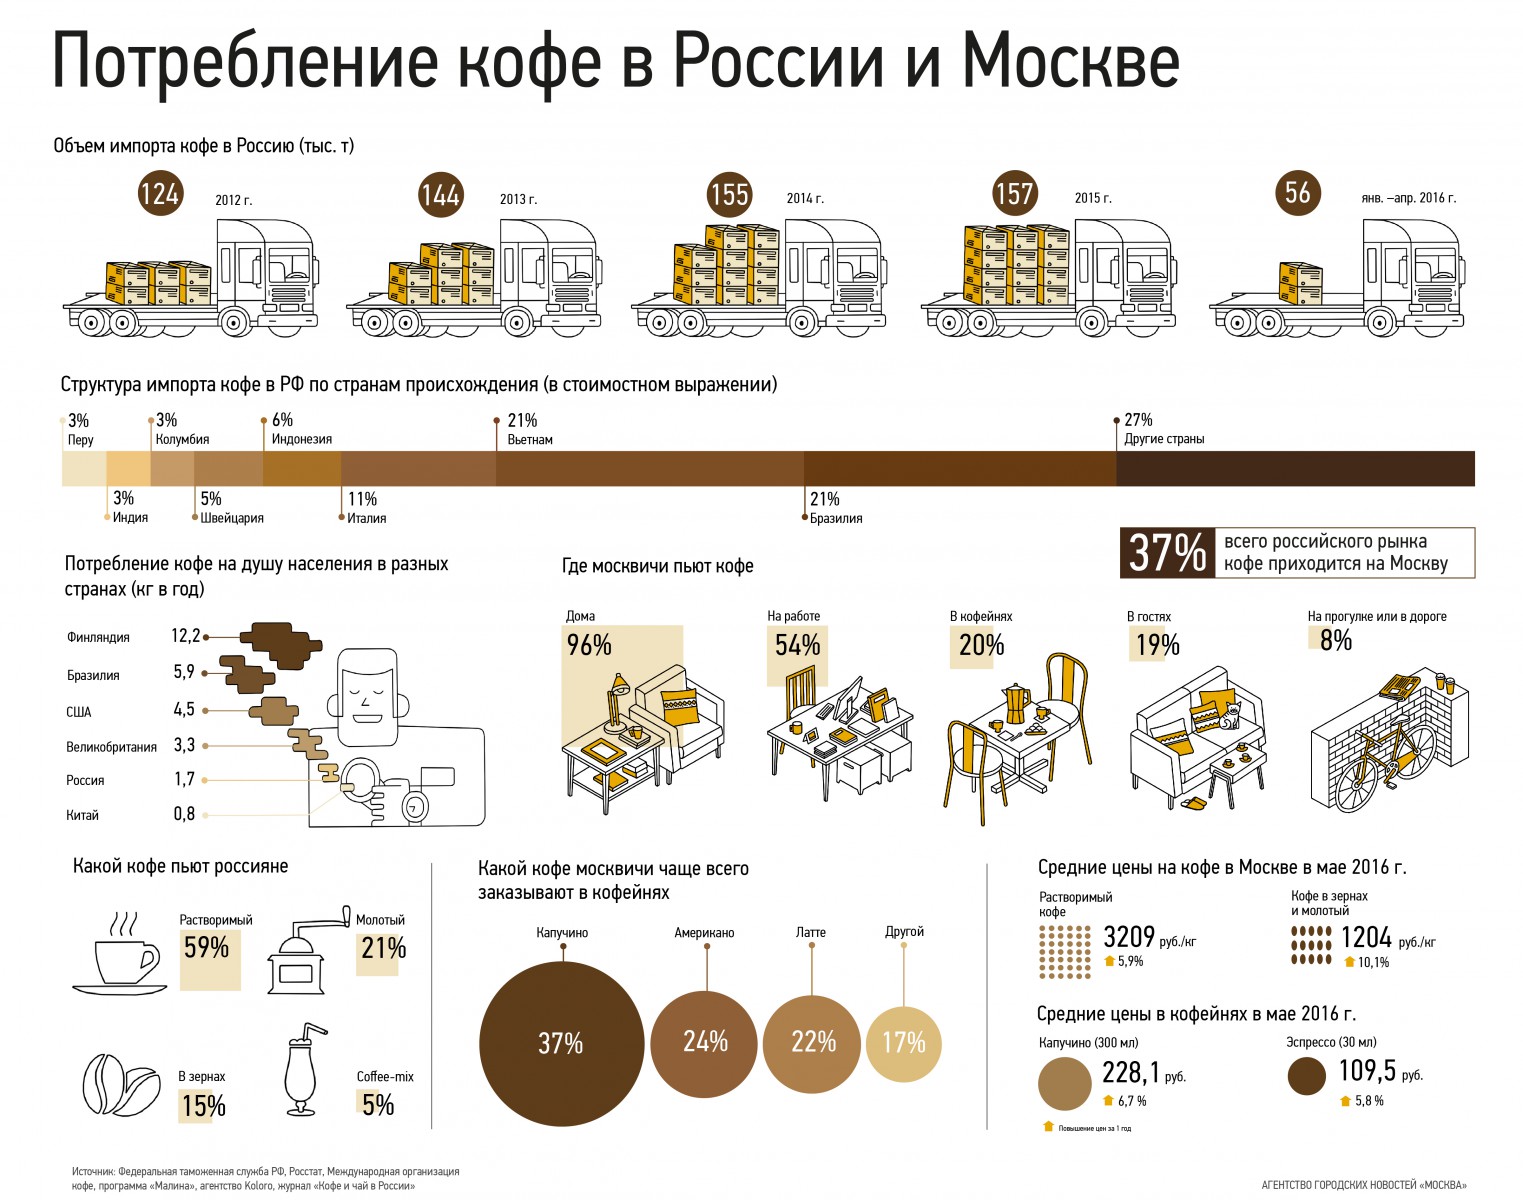 статистика потребления кофе в России